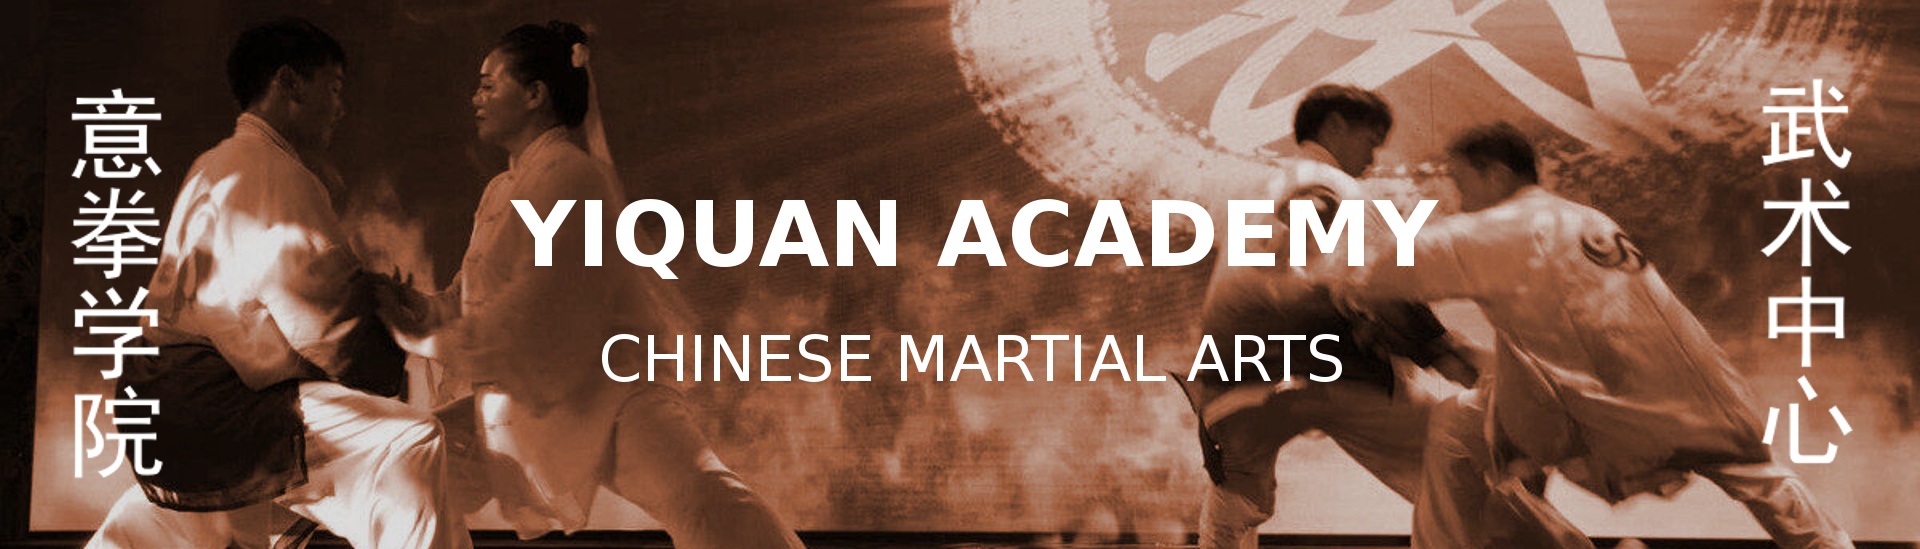 Yiquan Academy